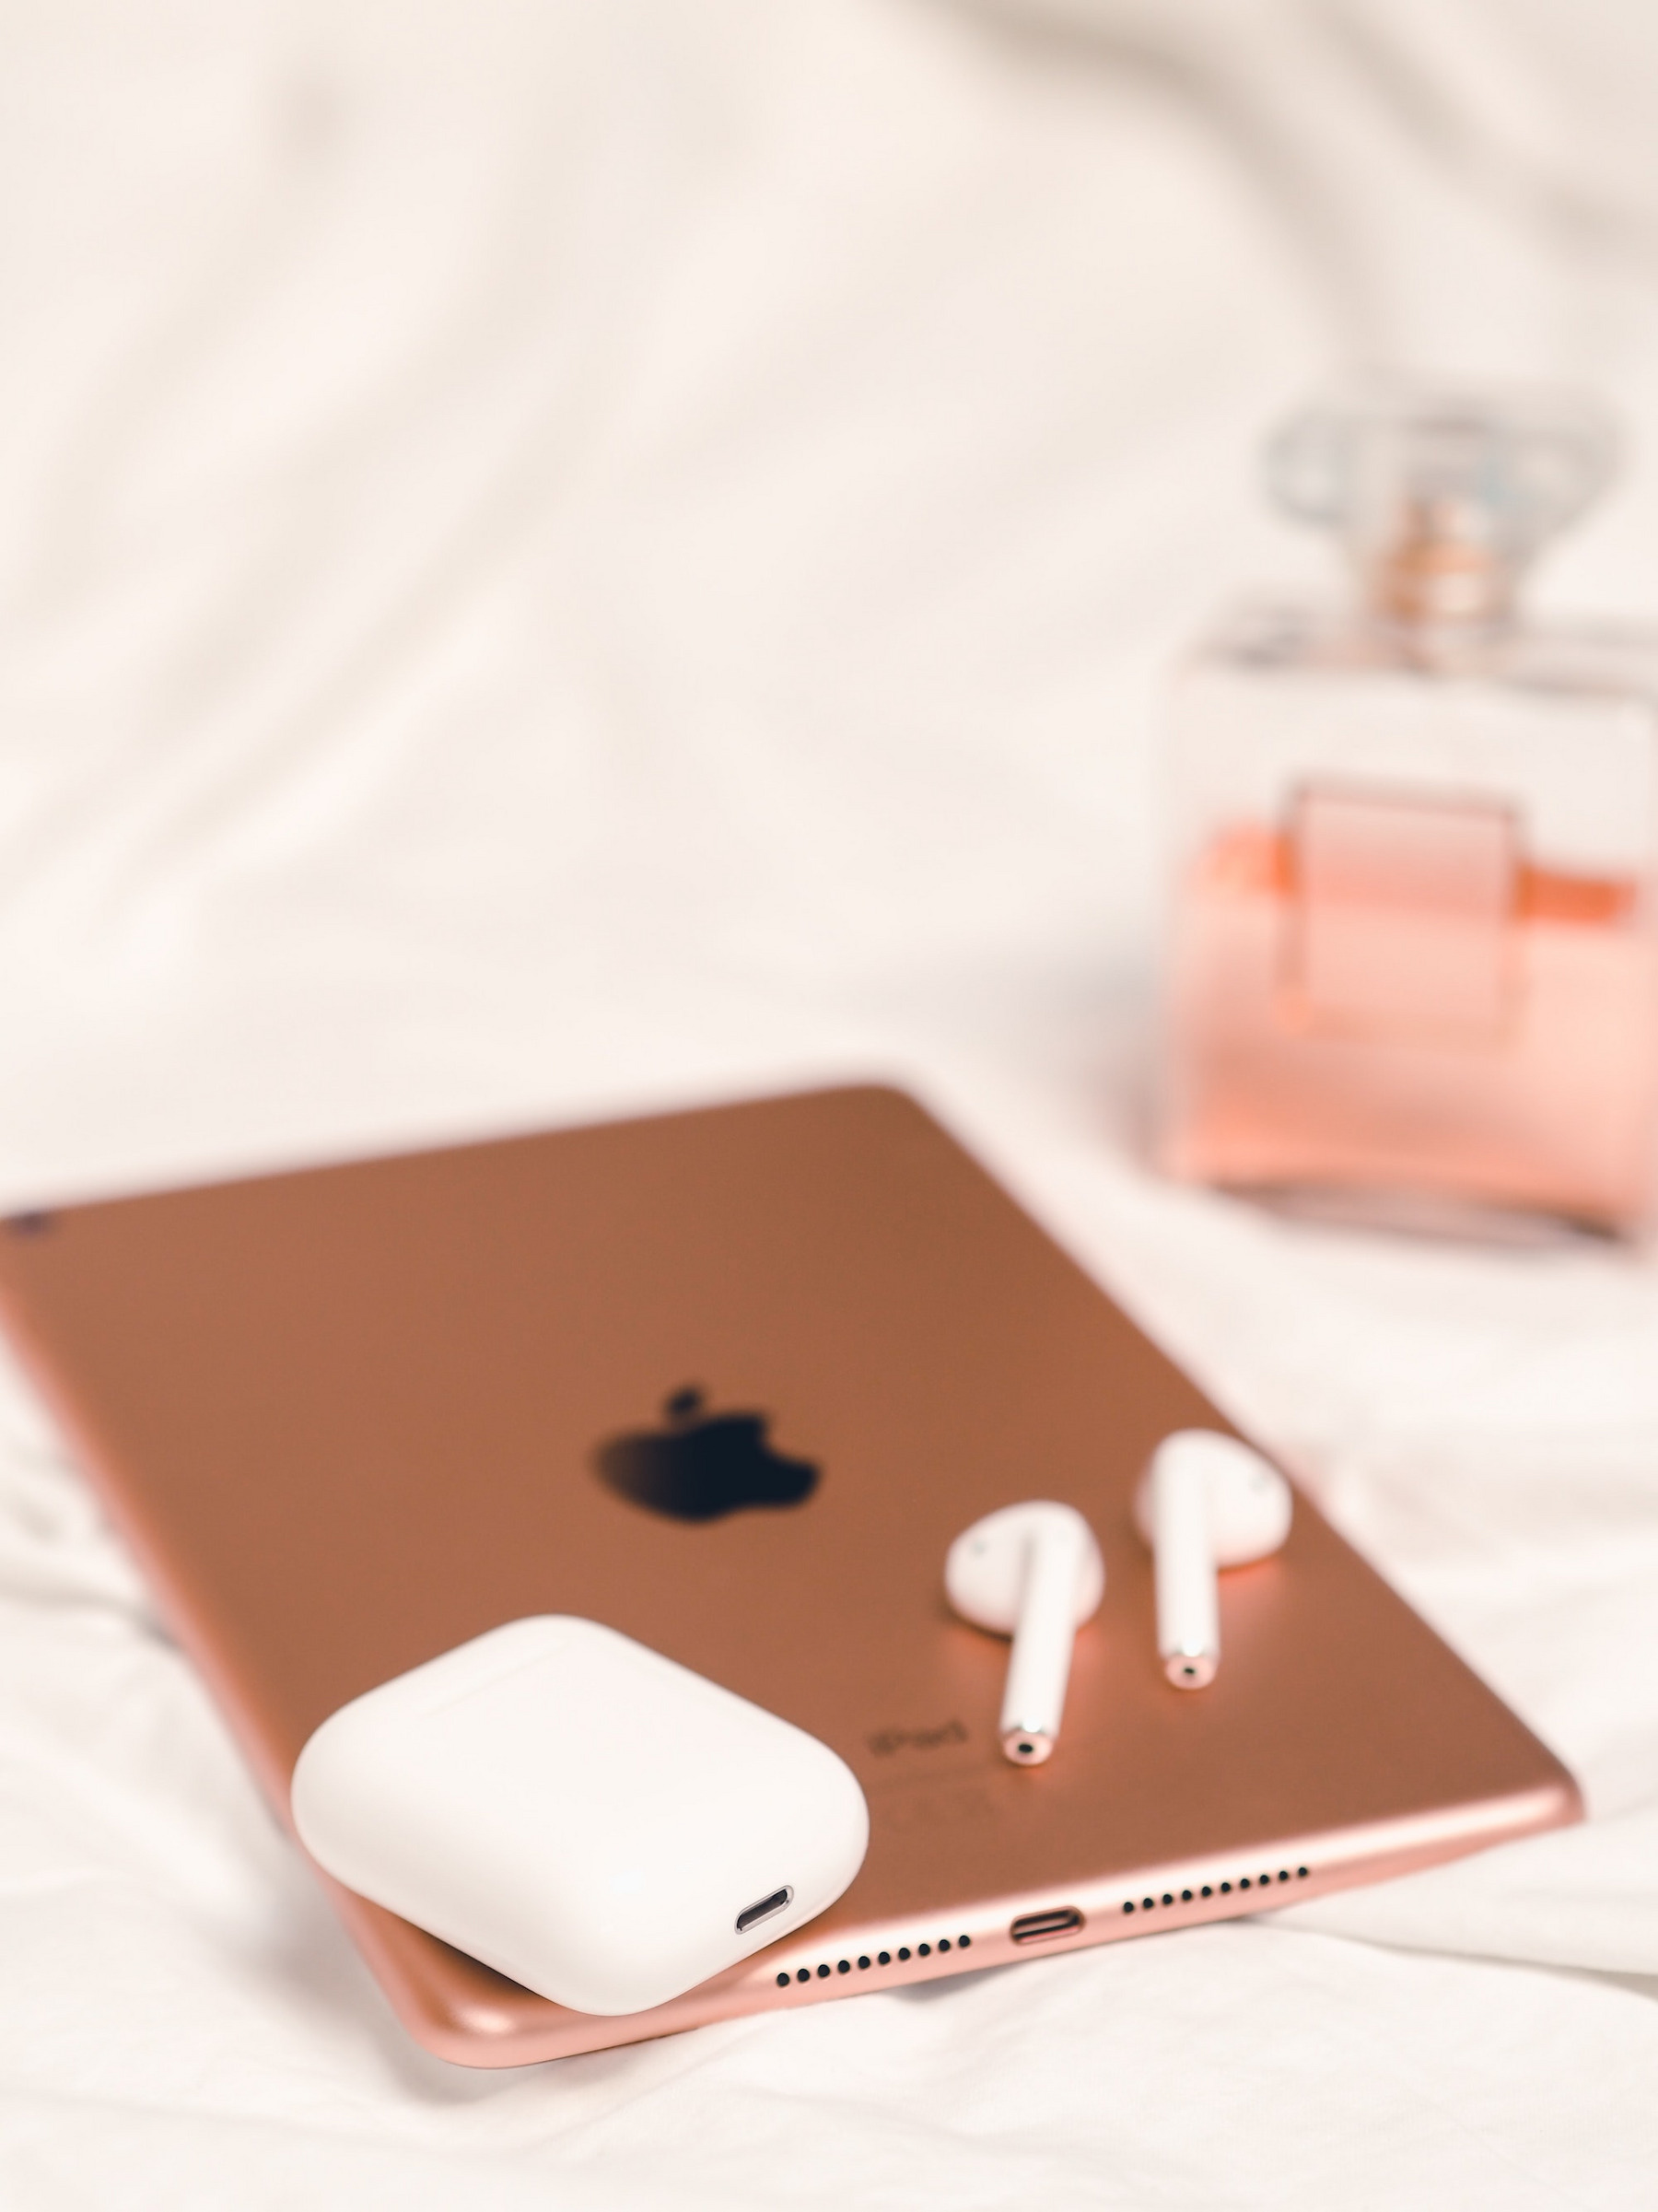 Apple Earpods-Kopfhörer liegen auf einem rotgoldenen iPad, im Hintergrund steht ein Parfumflacon.